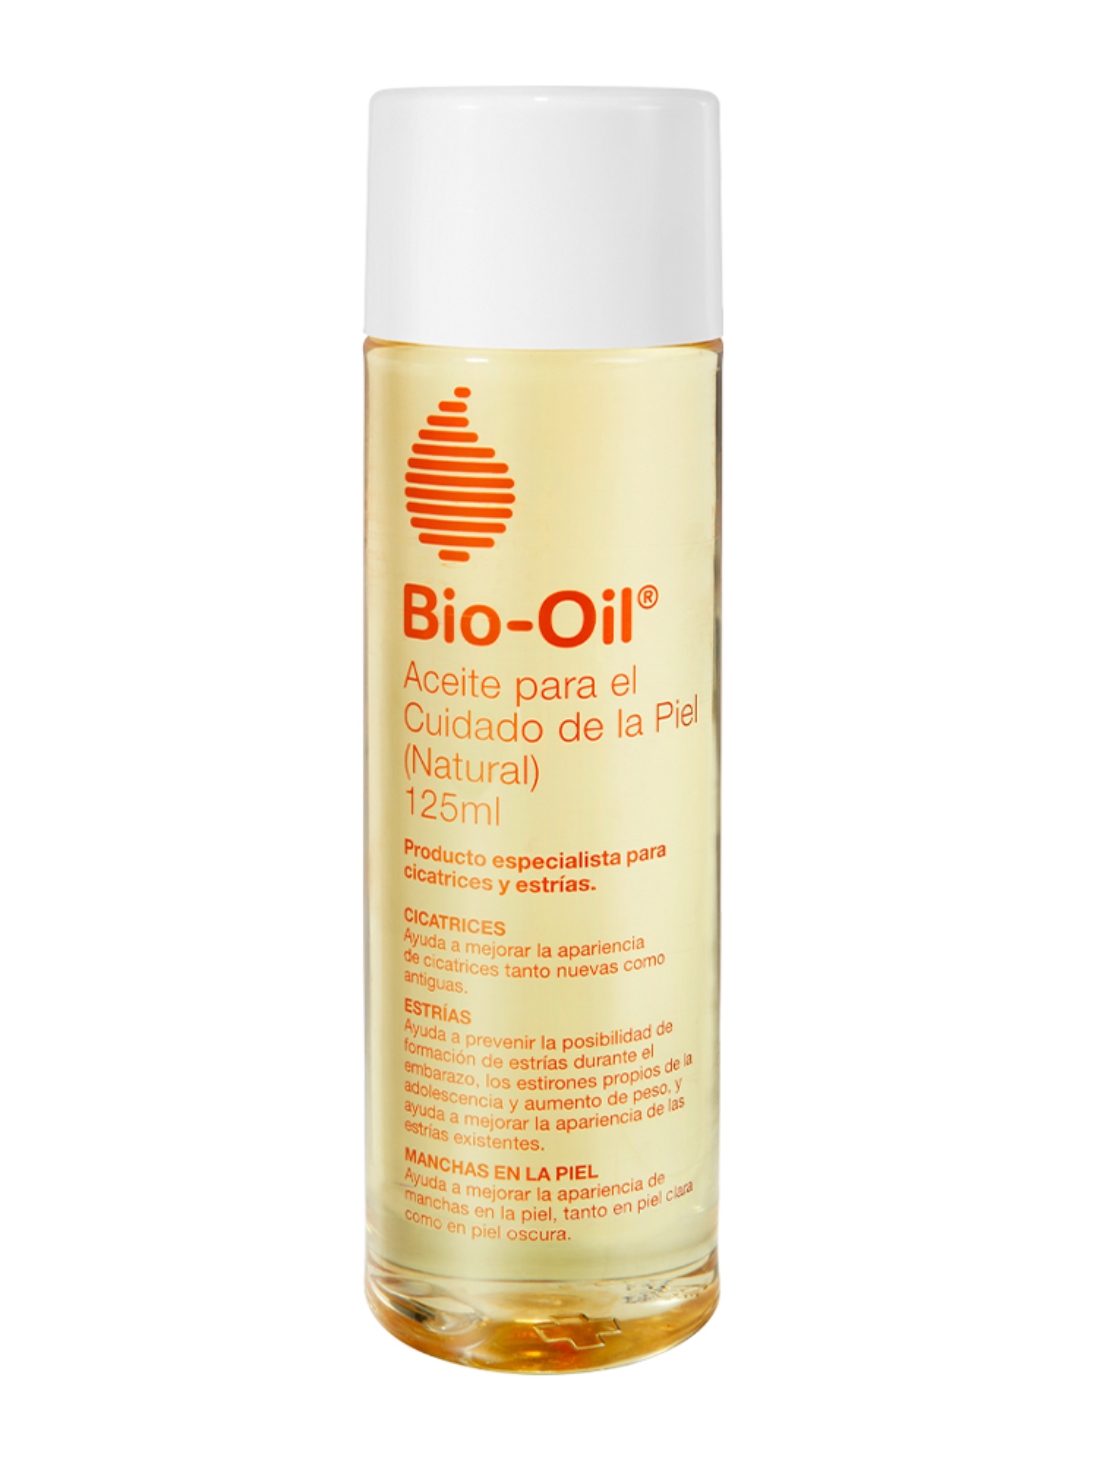 Cuidados Bio-Oil - Todo sobre tu piel